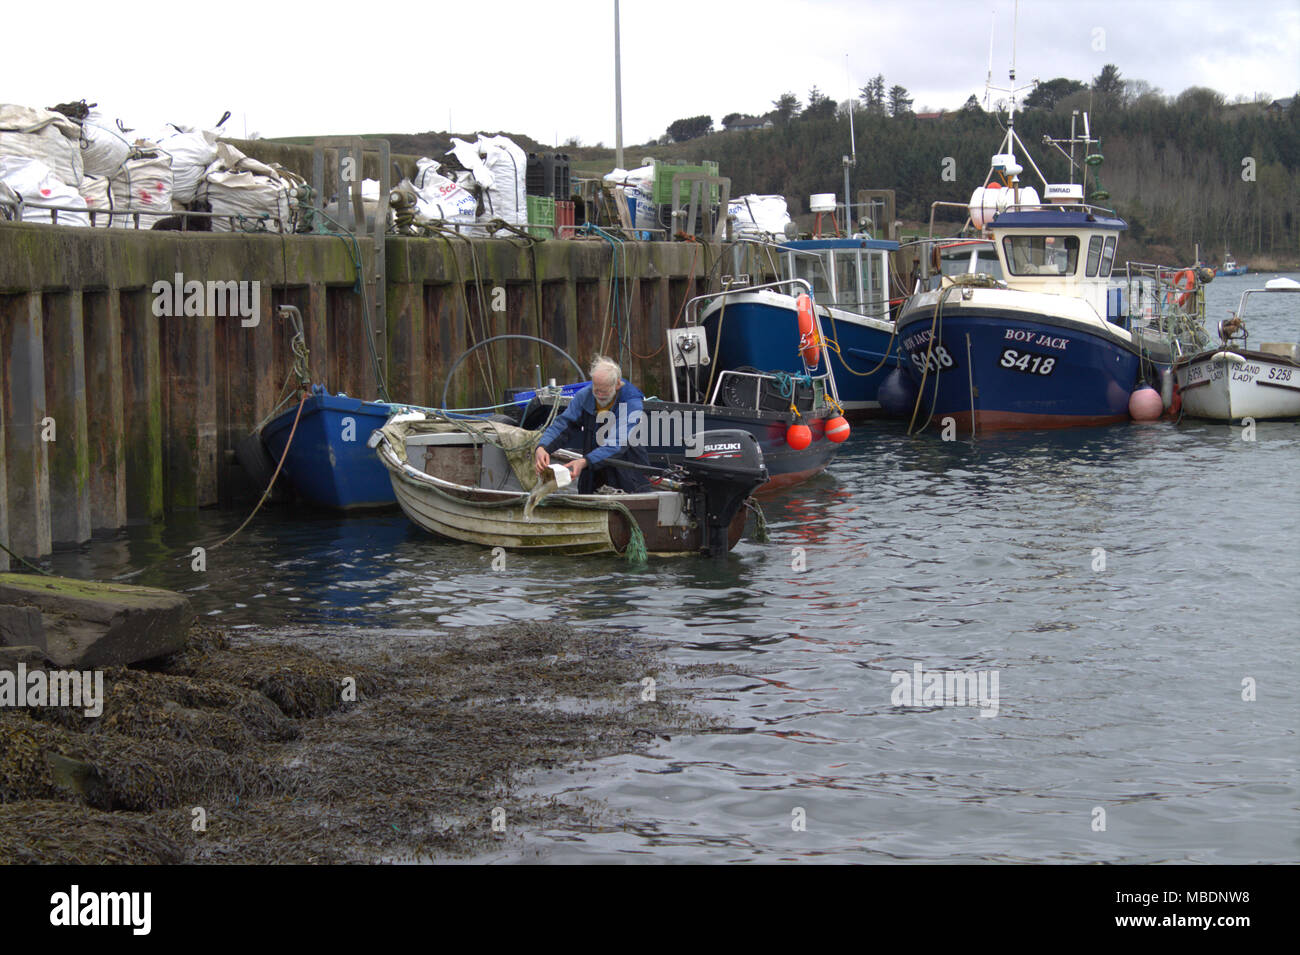 Fisherman renflouer son bateau avant de prendre la vague pour atteindre ses pots de crabe. West Cork, Irlande Banque D'Images